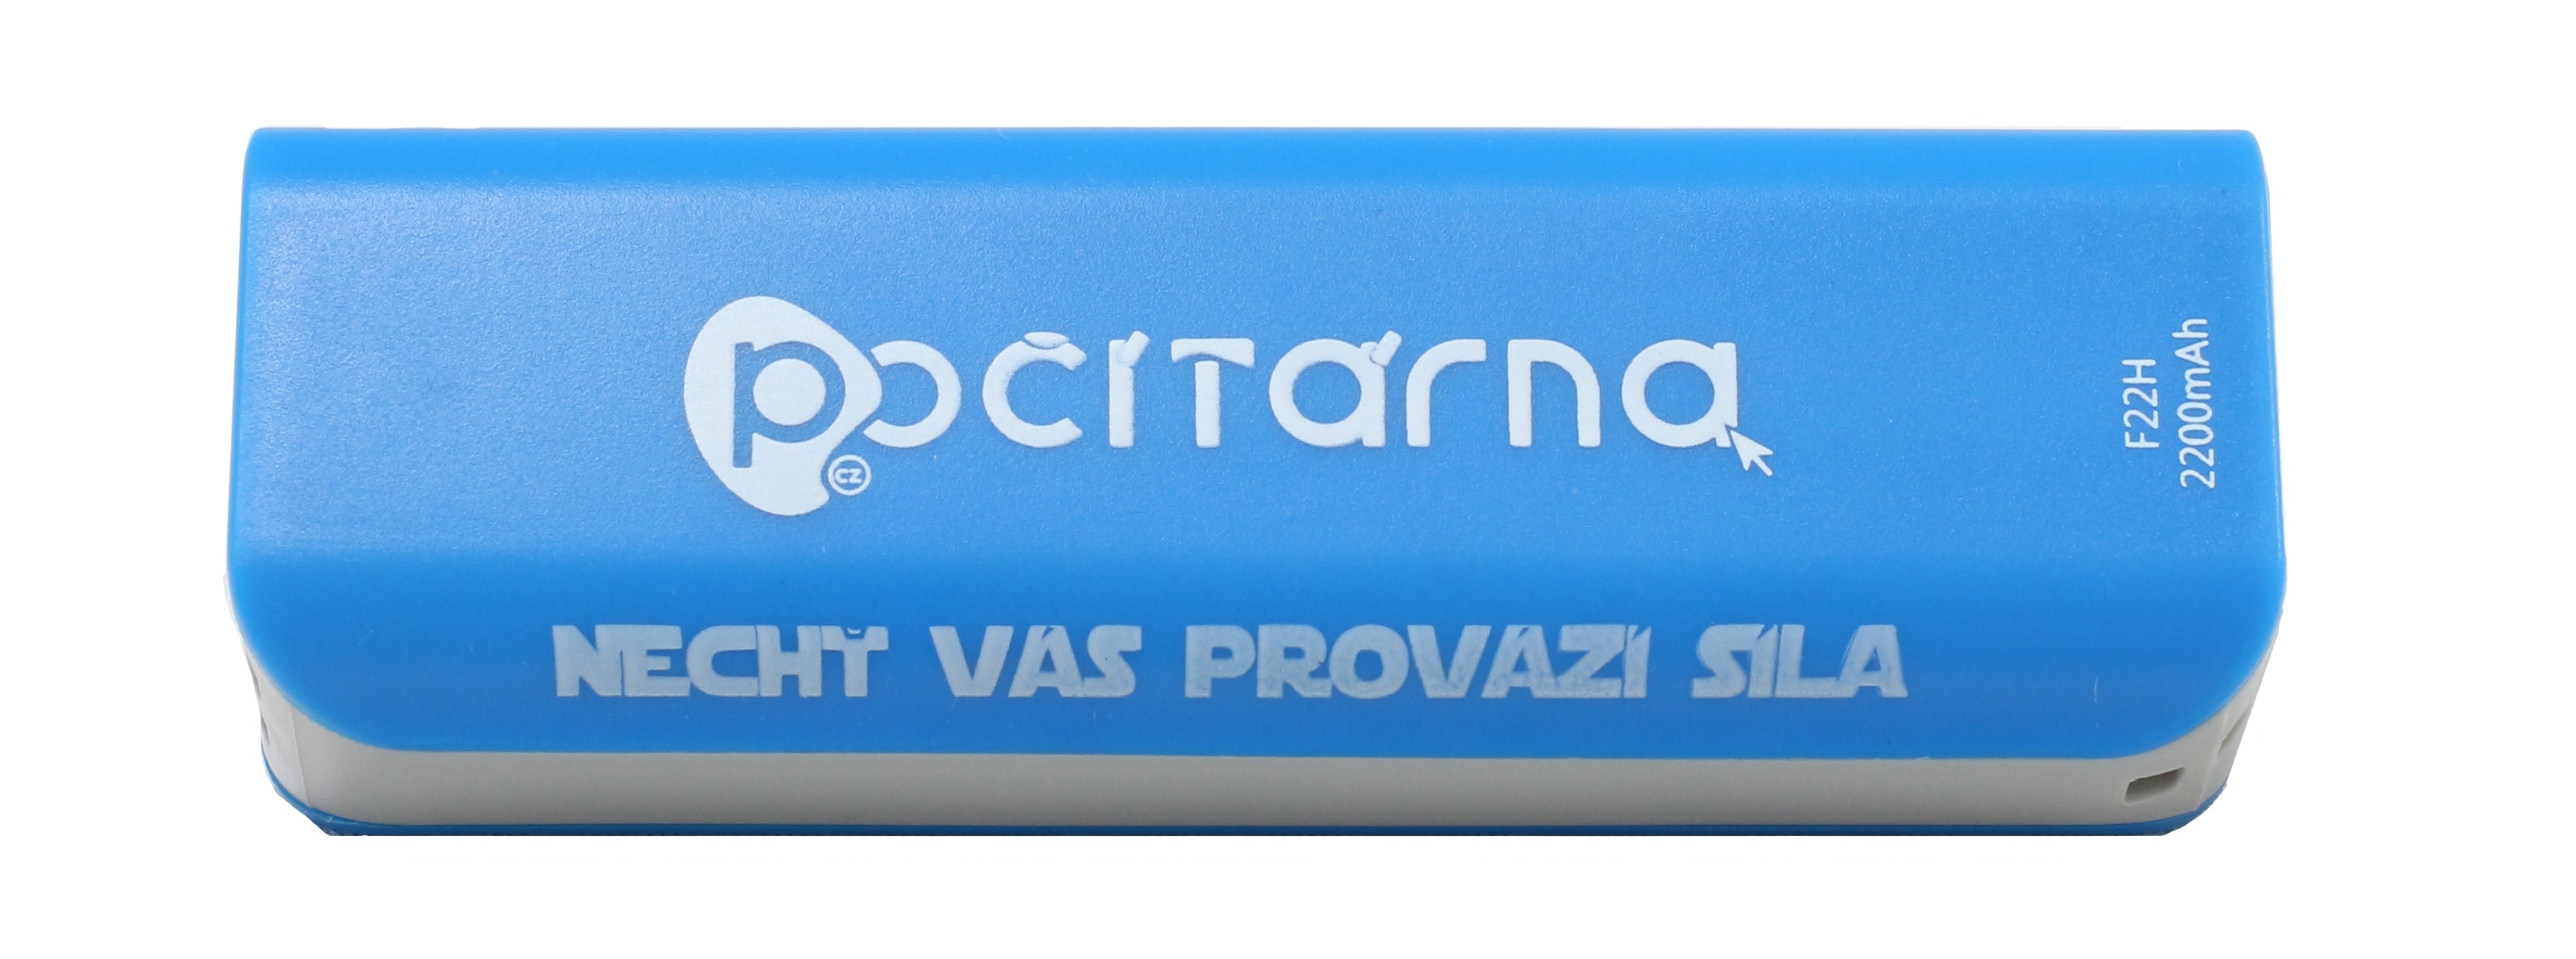 Powerbanka Počítárna 2200 mAh - externí bateriový zdroj - Modrá